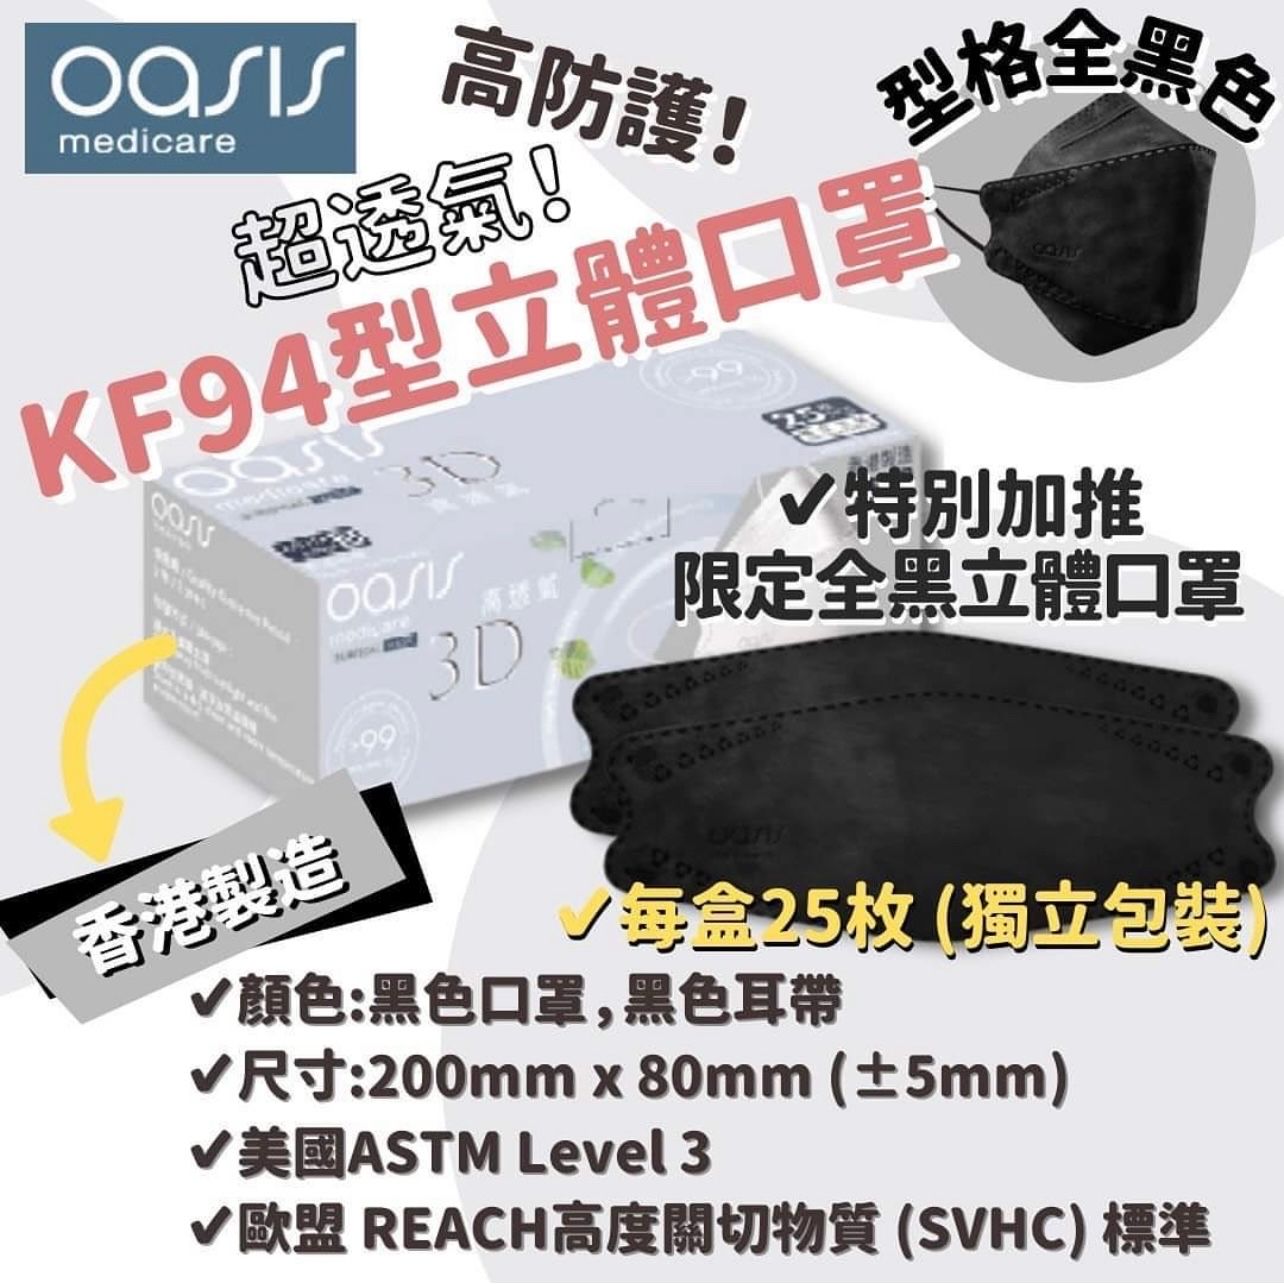 香港製造品牌口罩 Oasis Medicare超透氣kf94型立體口罩 2 X Fusion全球護膚生活百貨店